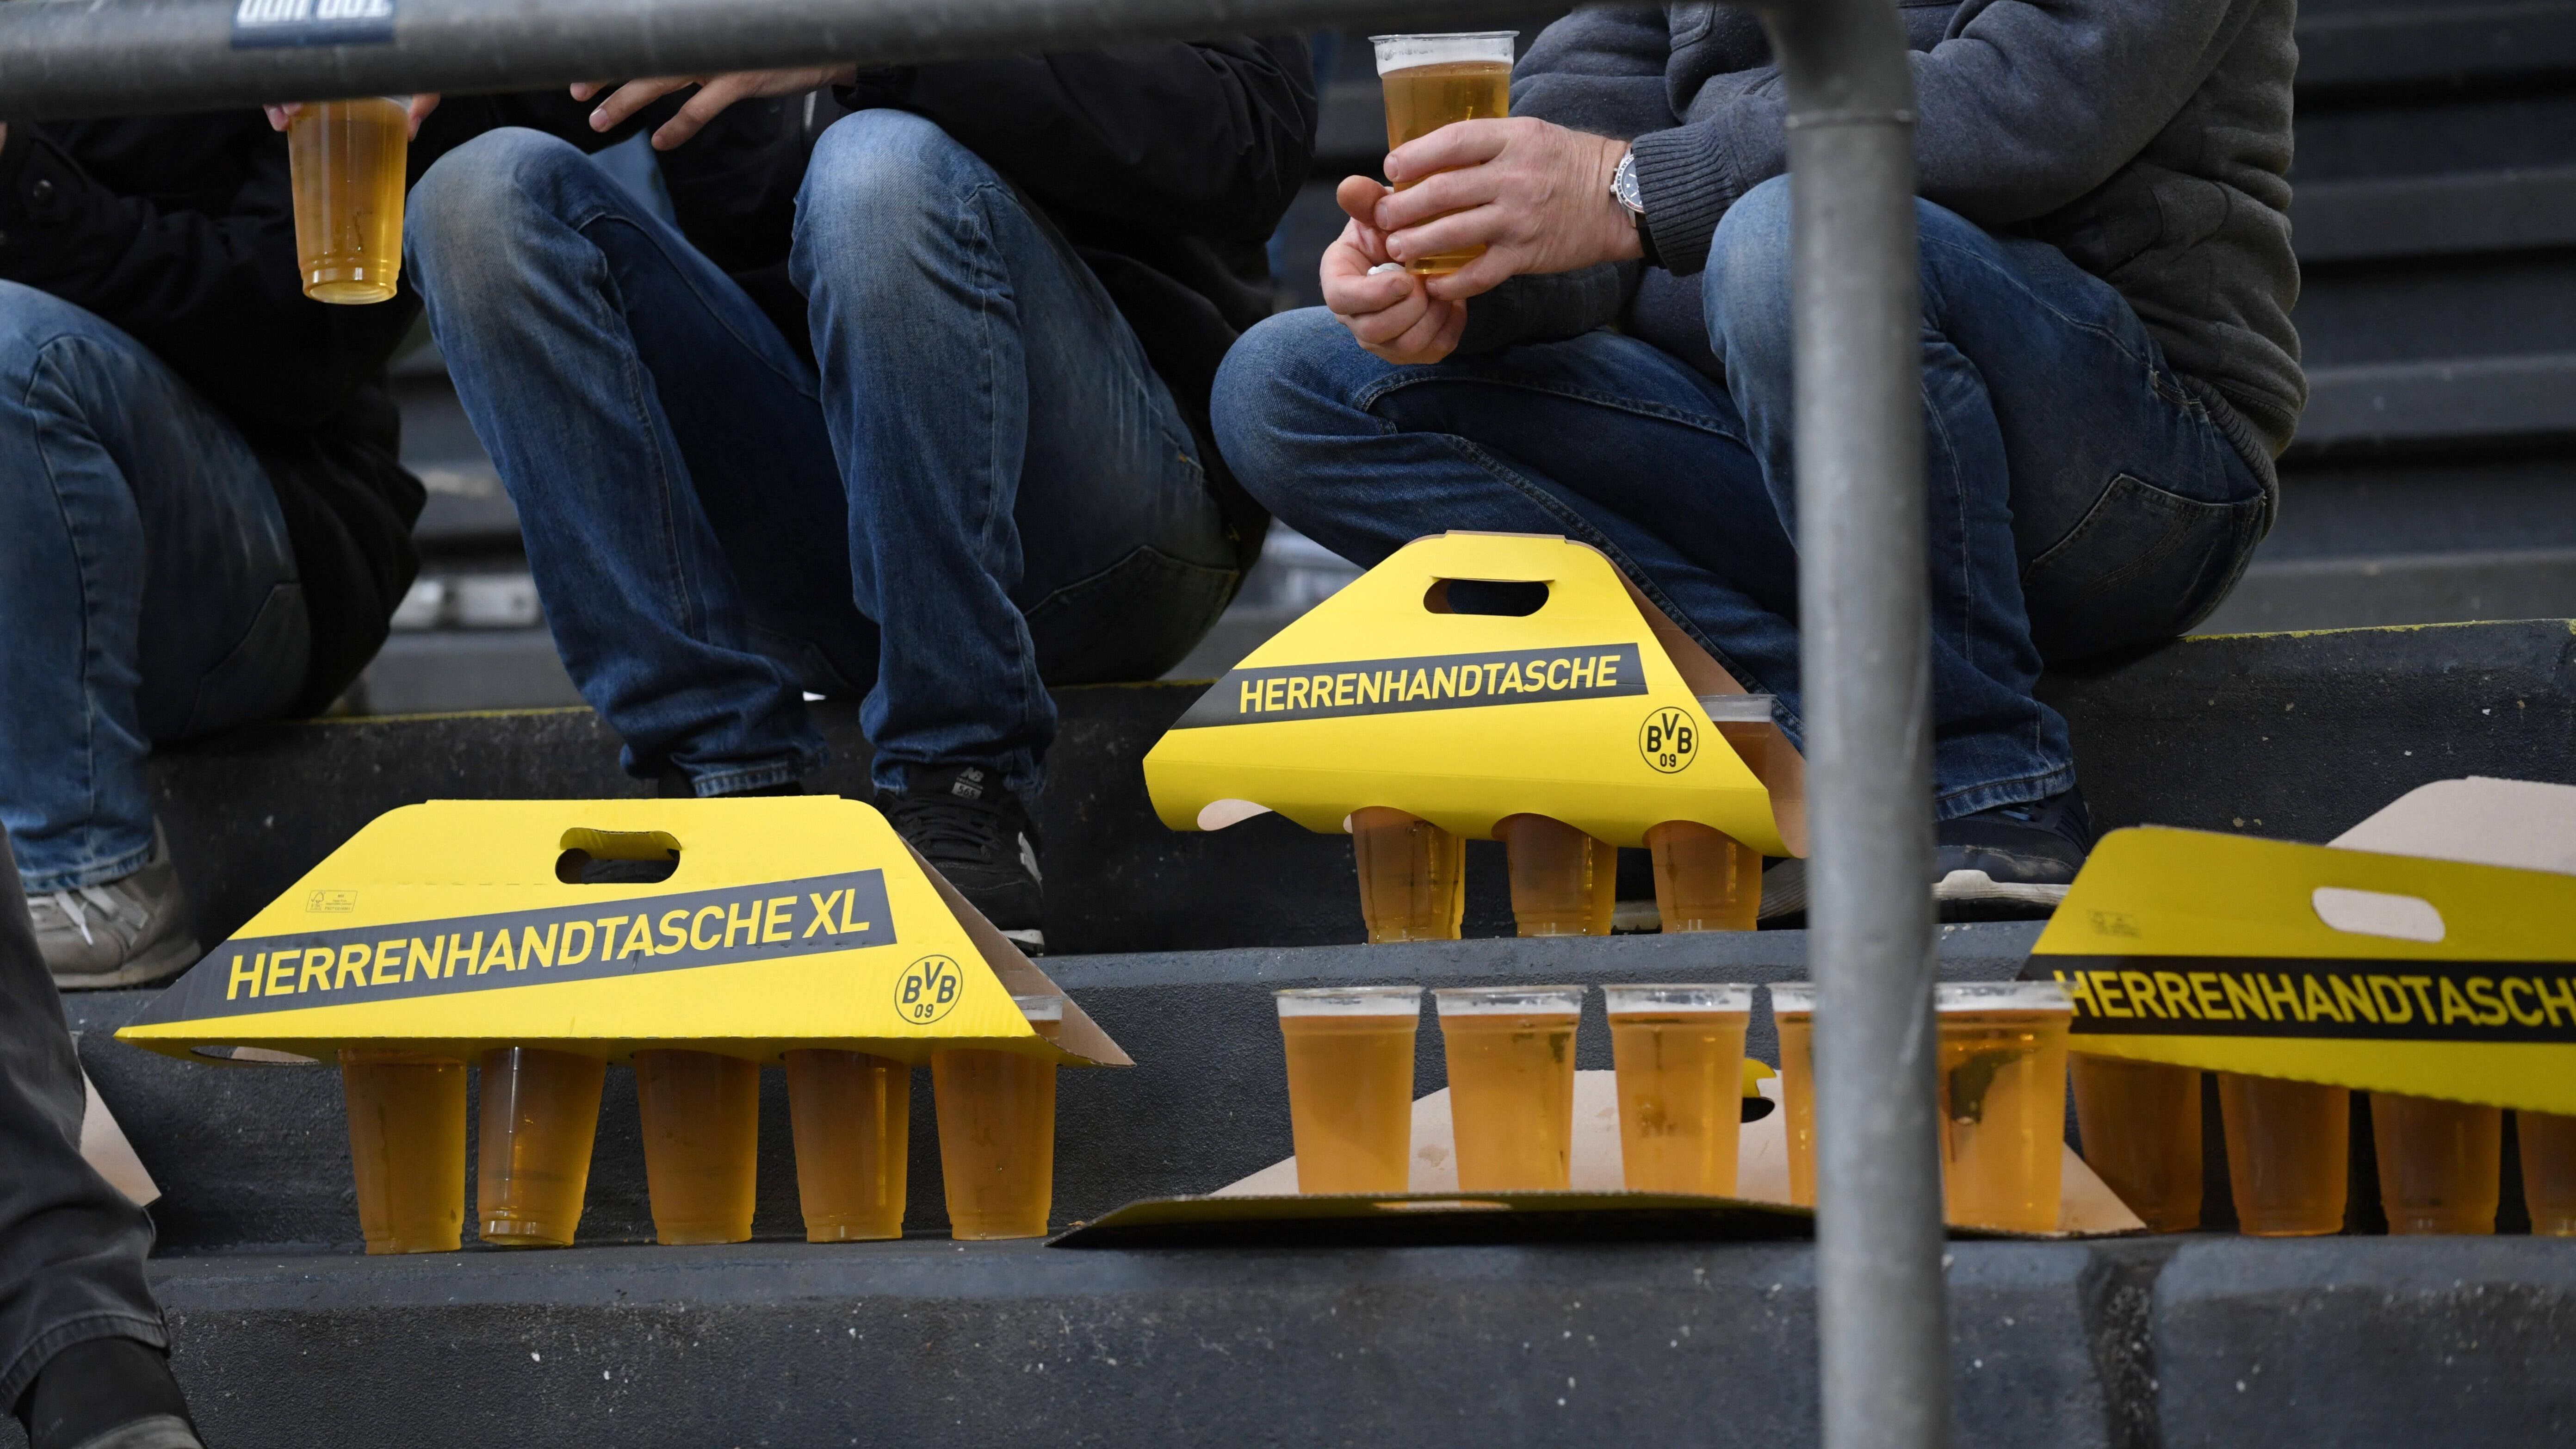 <strong>Promille-Grenzen in Bundesliga-Stadien</strong><br>Bier im Stadion gehört für viele zu einem Fußball-Spiel dazu. Doch in der sowieso oft schon aufgeheizten Stimmung einer Partie kann der Alkohol die Gemüter zusätzlich erhitzen. Deshalb werden Grenzen gesetzt. <em><strong>ran</strong></em> zeigt die Promille-Grenzen in den Bundesliga-Stadien. (Quelle: Bild)